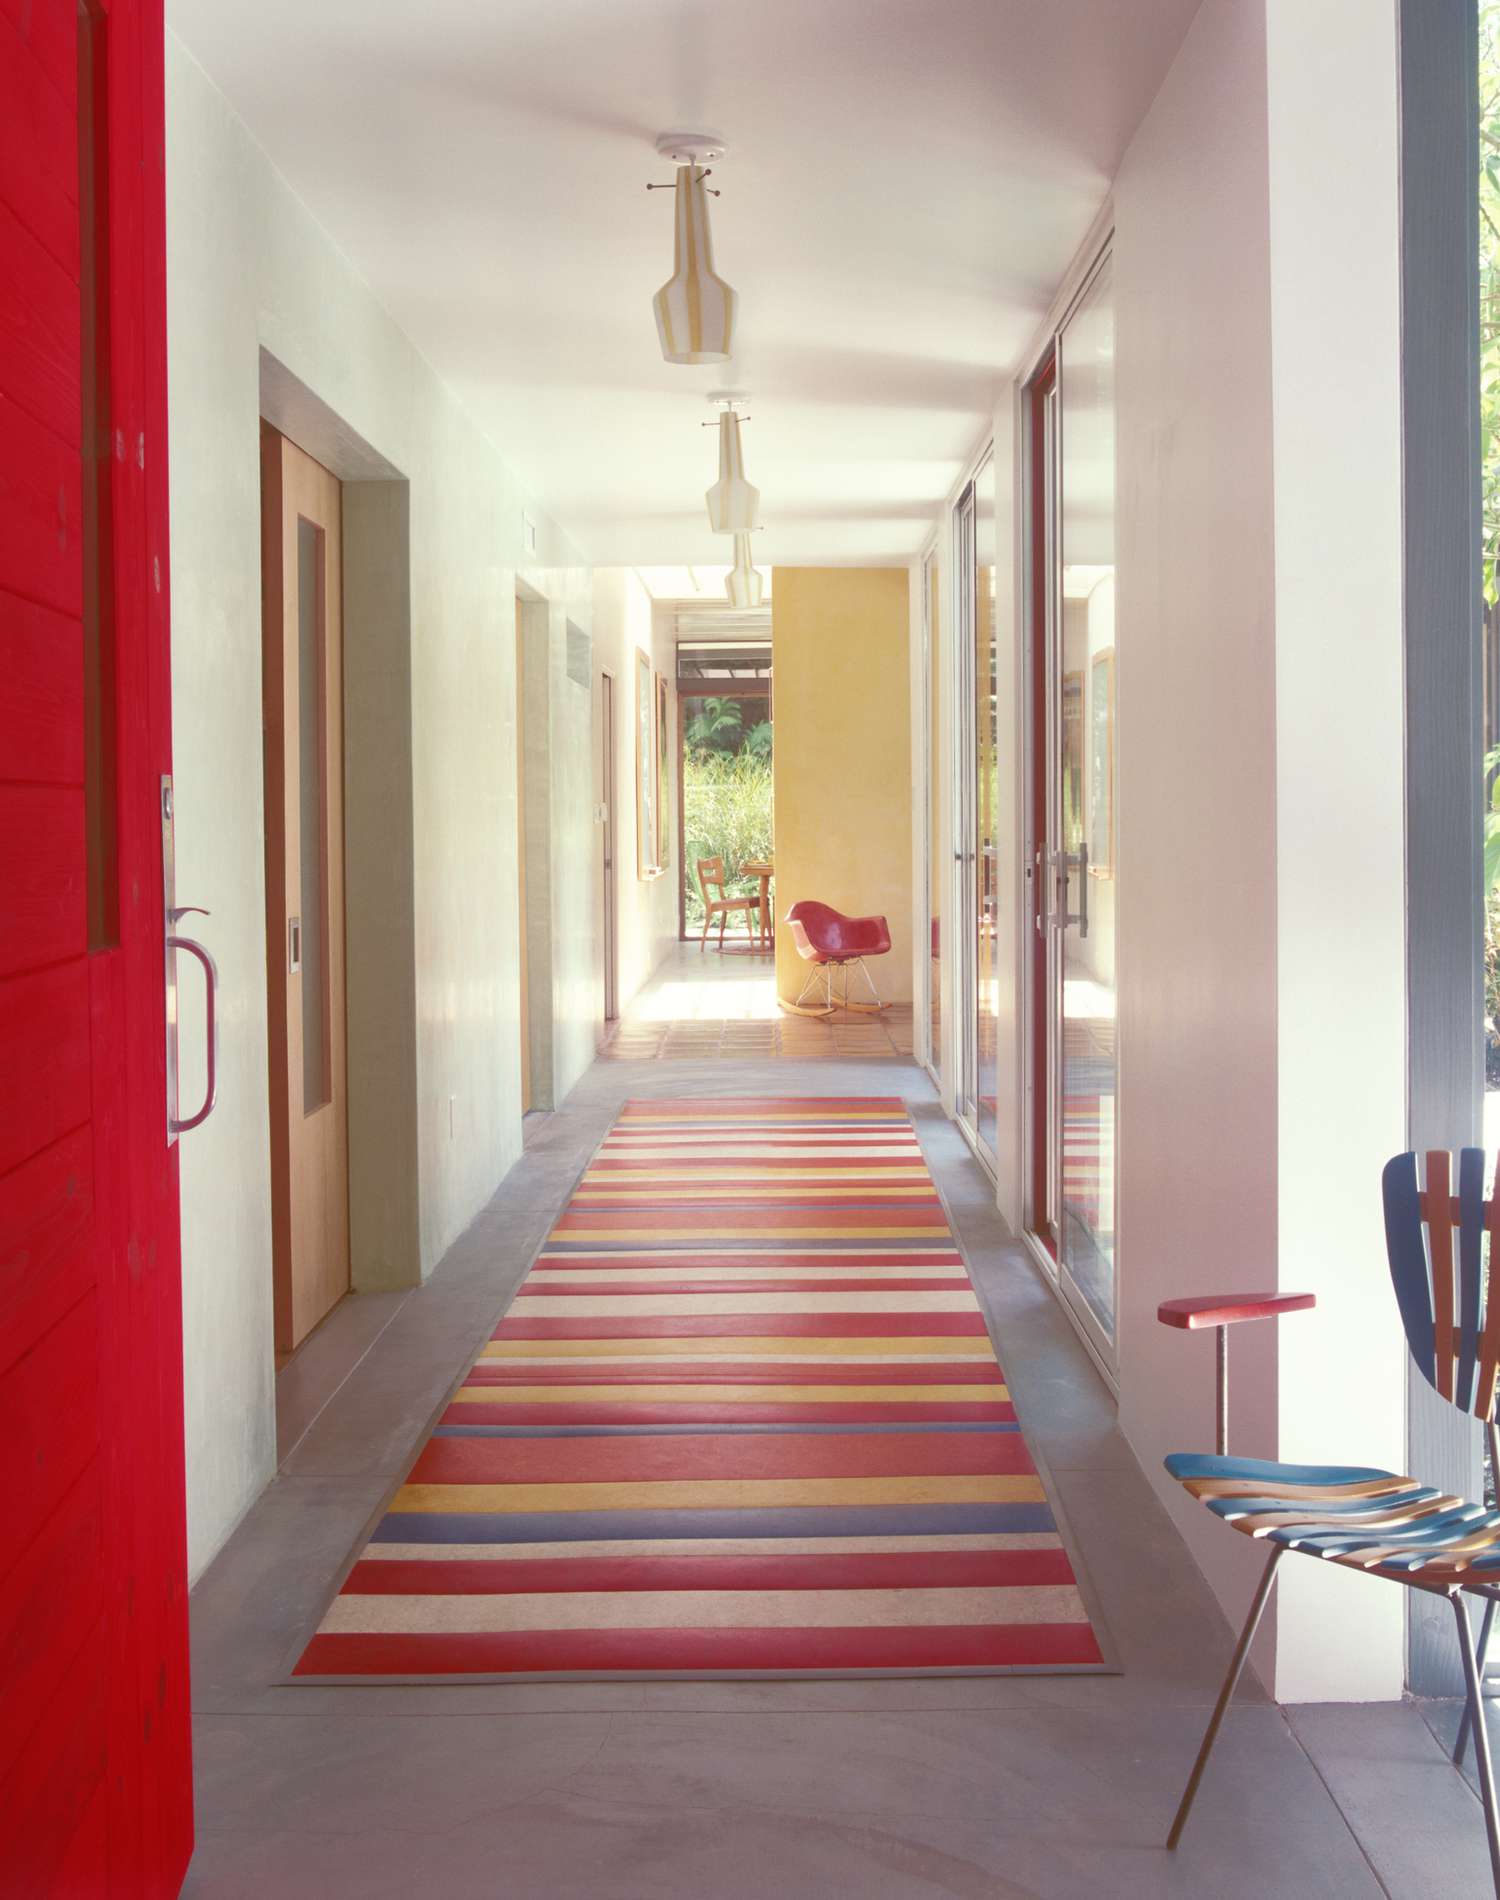 corredor colorido com um corredor vermelho, azul e amarelo